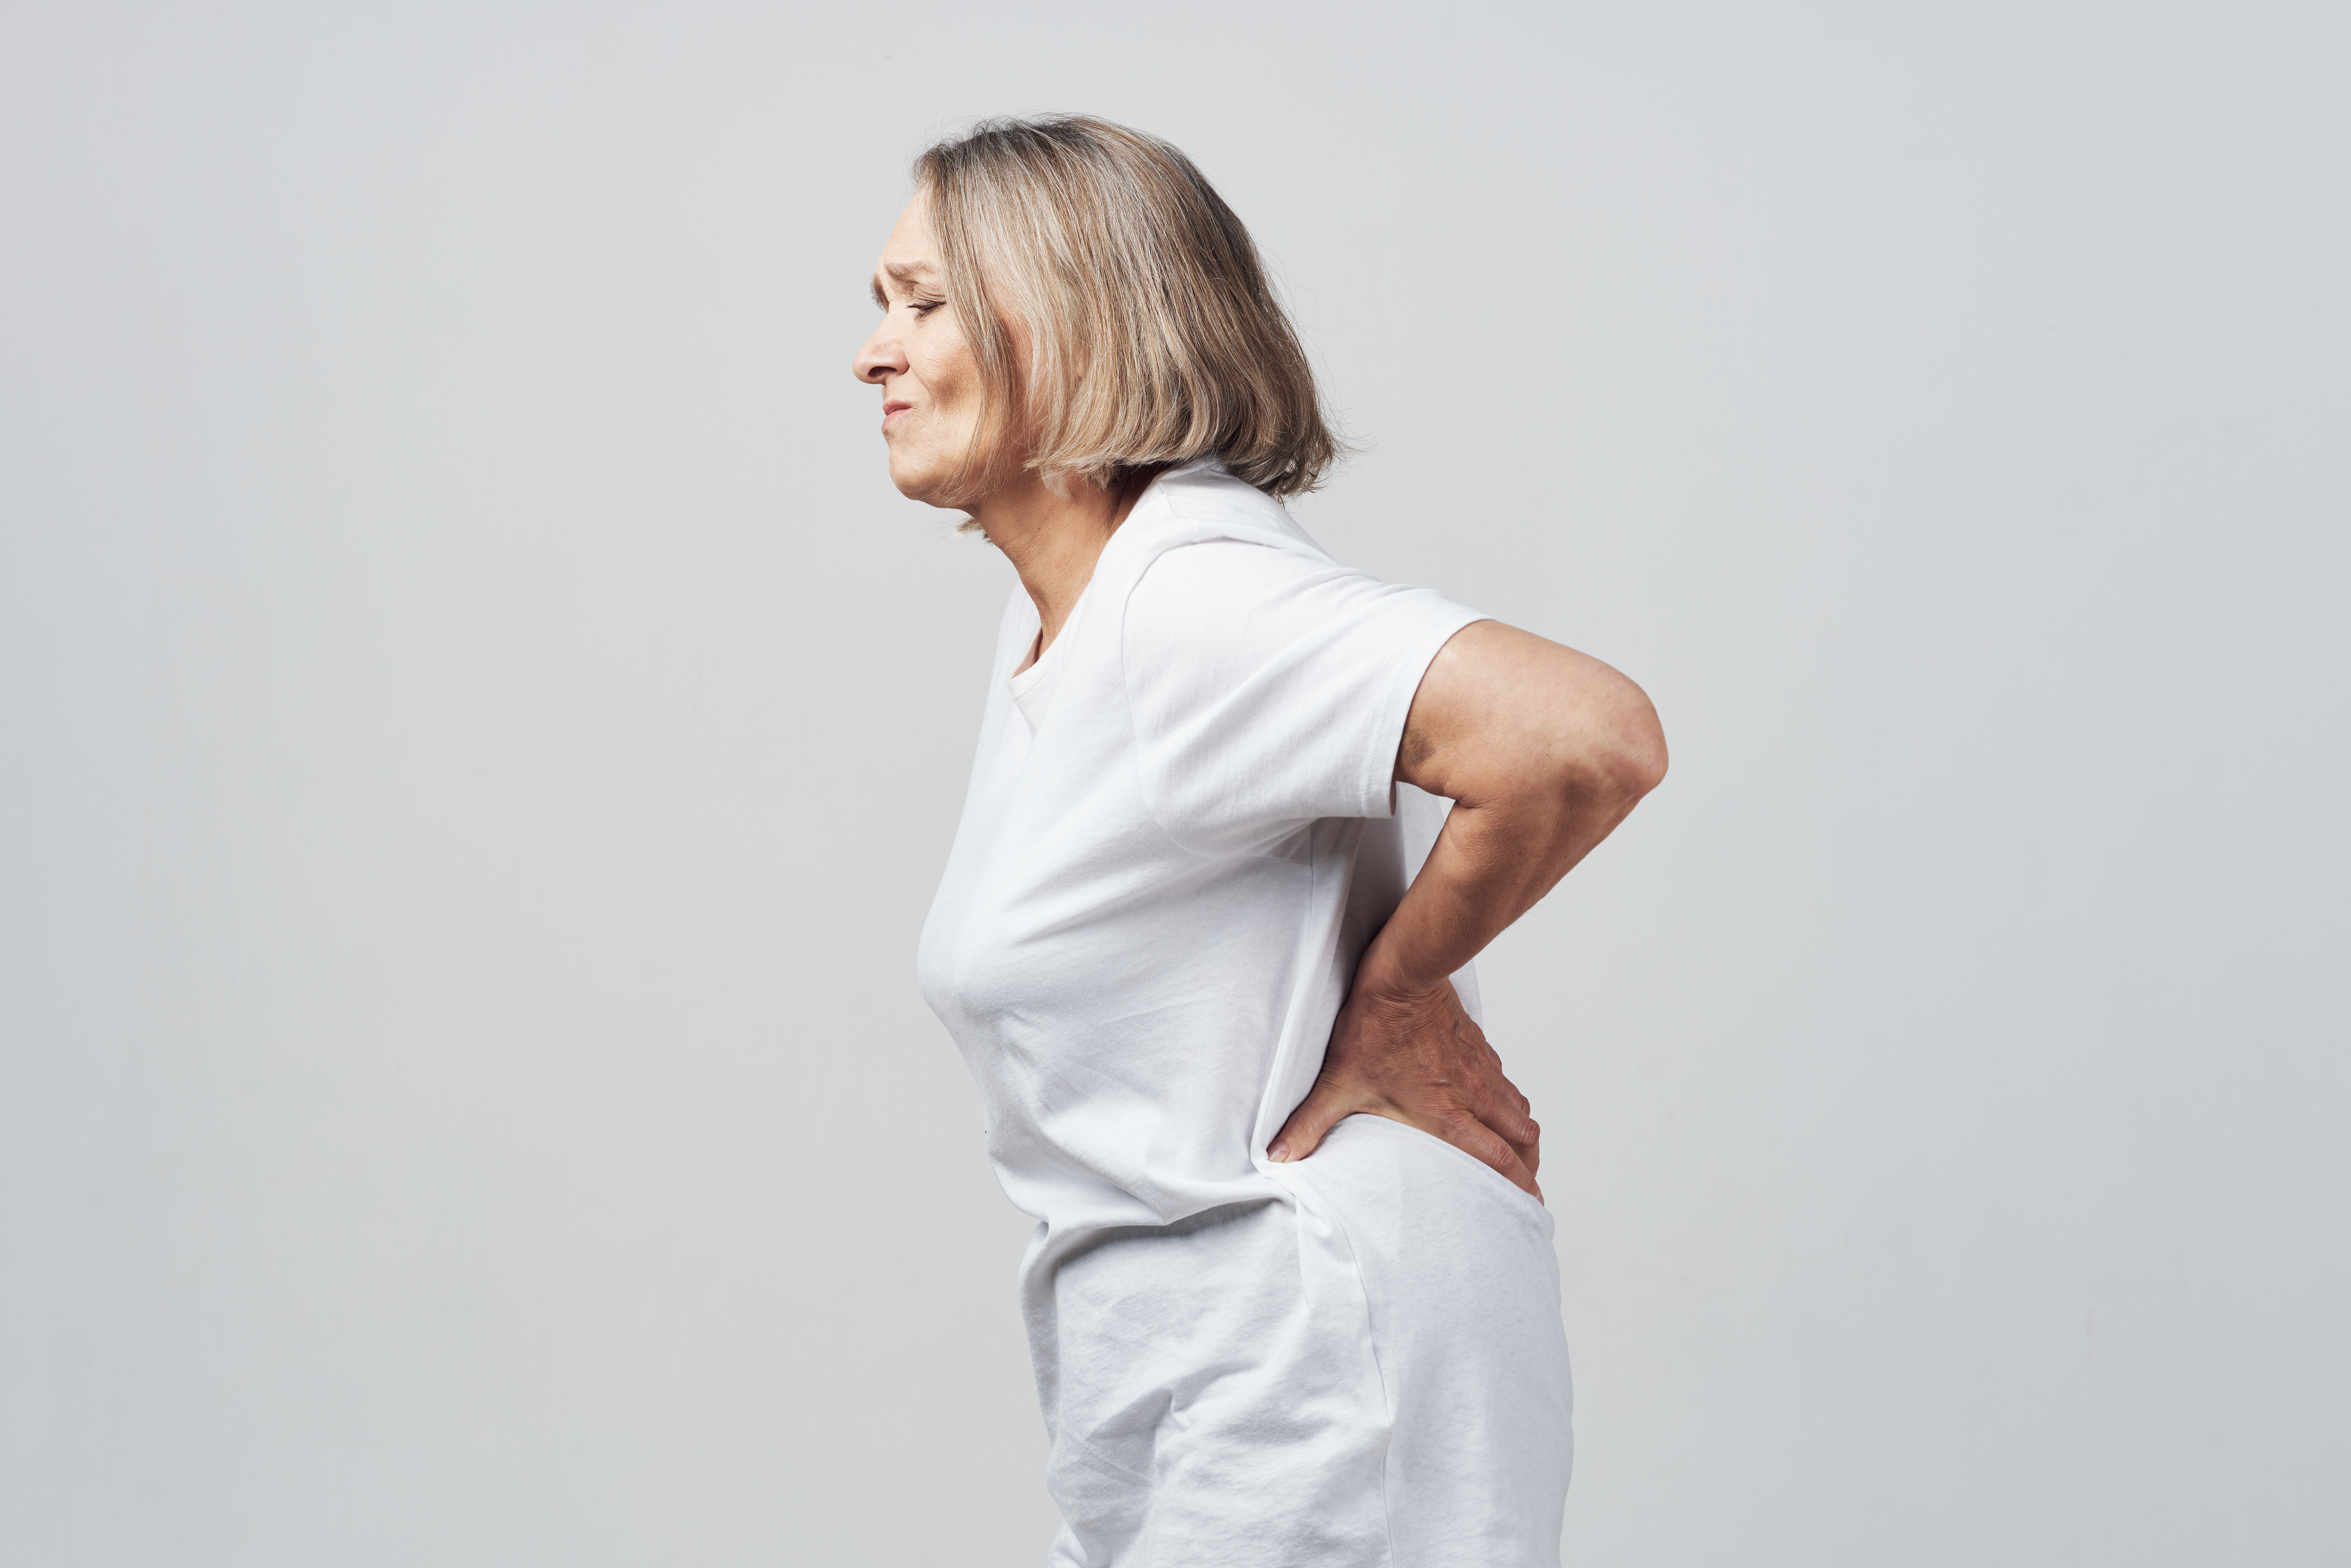 Przedstawione zdjęcie ukazuje starszą kobietę z osteoporozą, która zgina się z bólu pleców. Choroba ta powoduje osłabienie i utratę masy kości, co zwiększa ryzyko złamań i bólu. Kobieta prezentuje się zrezygnowana i cierpiąca, co ukazuje jak trudne i ograniczające mogą być skutki tej choroby